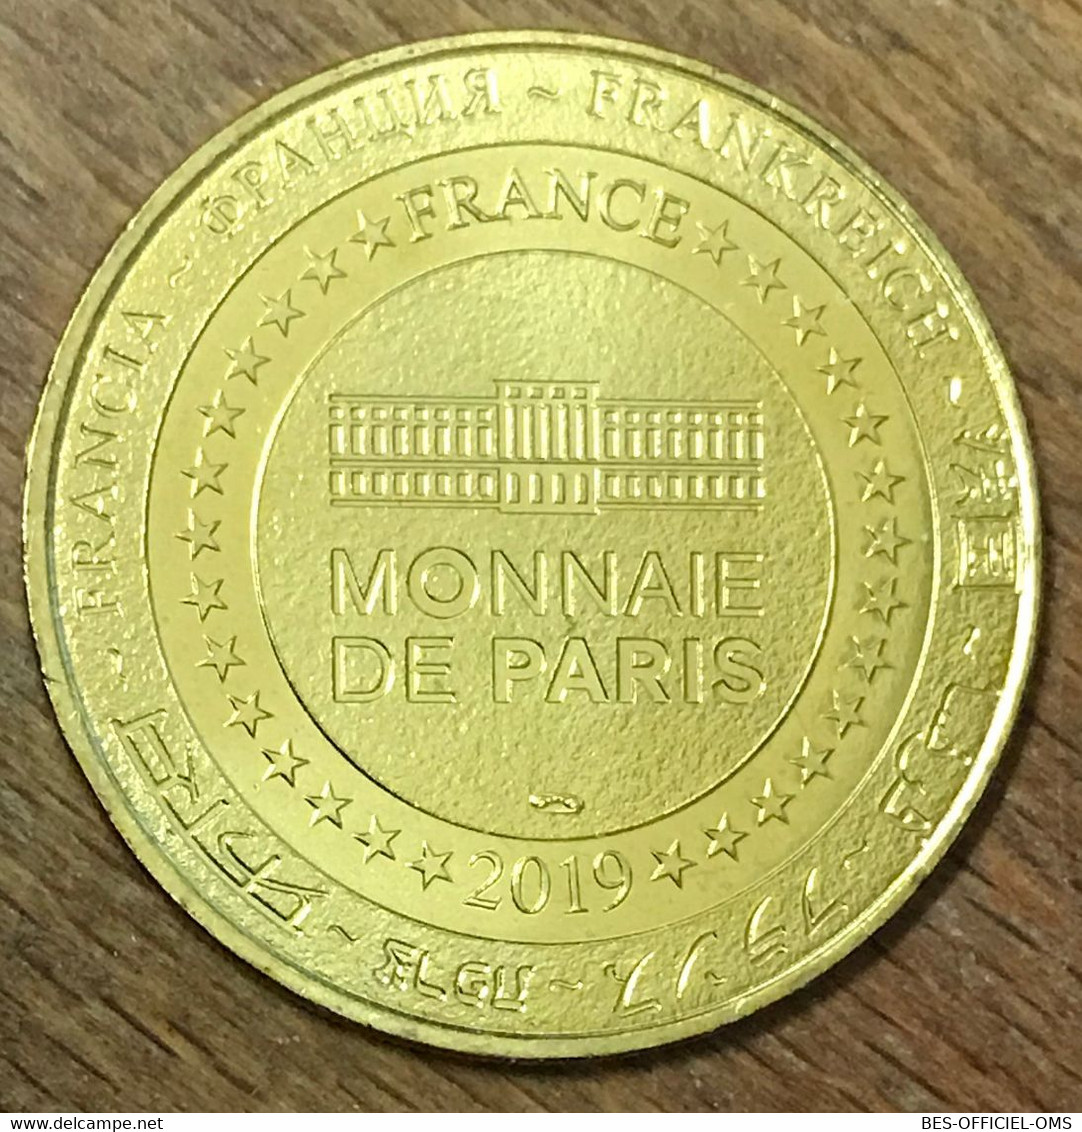 77 DISNEYLAND MINNIE LE CAROUSEL DISNEY MDP 2019 MÉDAILLE SOUVENIR MONNAIE DE PARIS JETON TOURISTIQUE MEDALS COIN TOKENS - 2019